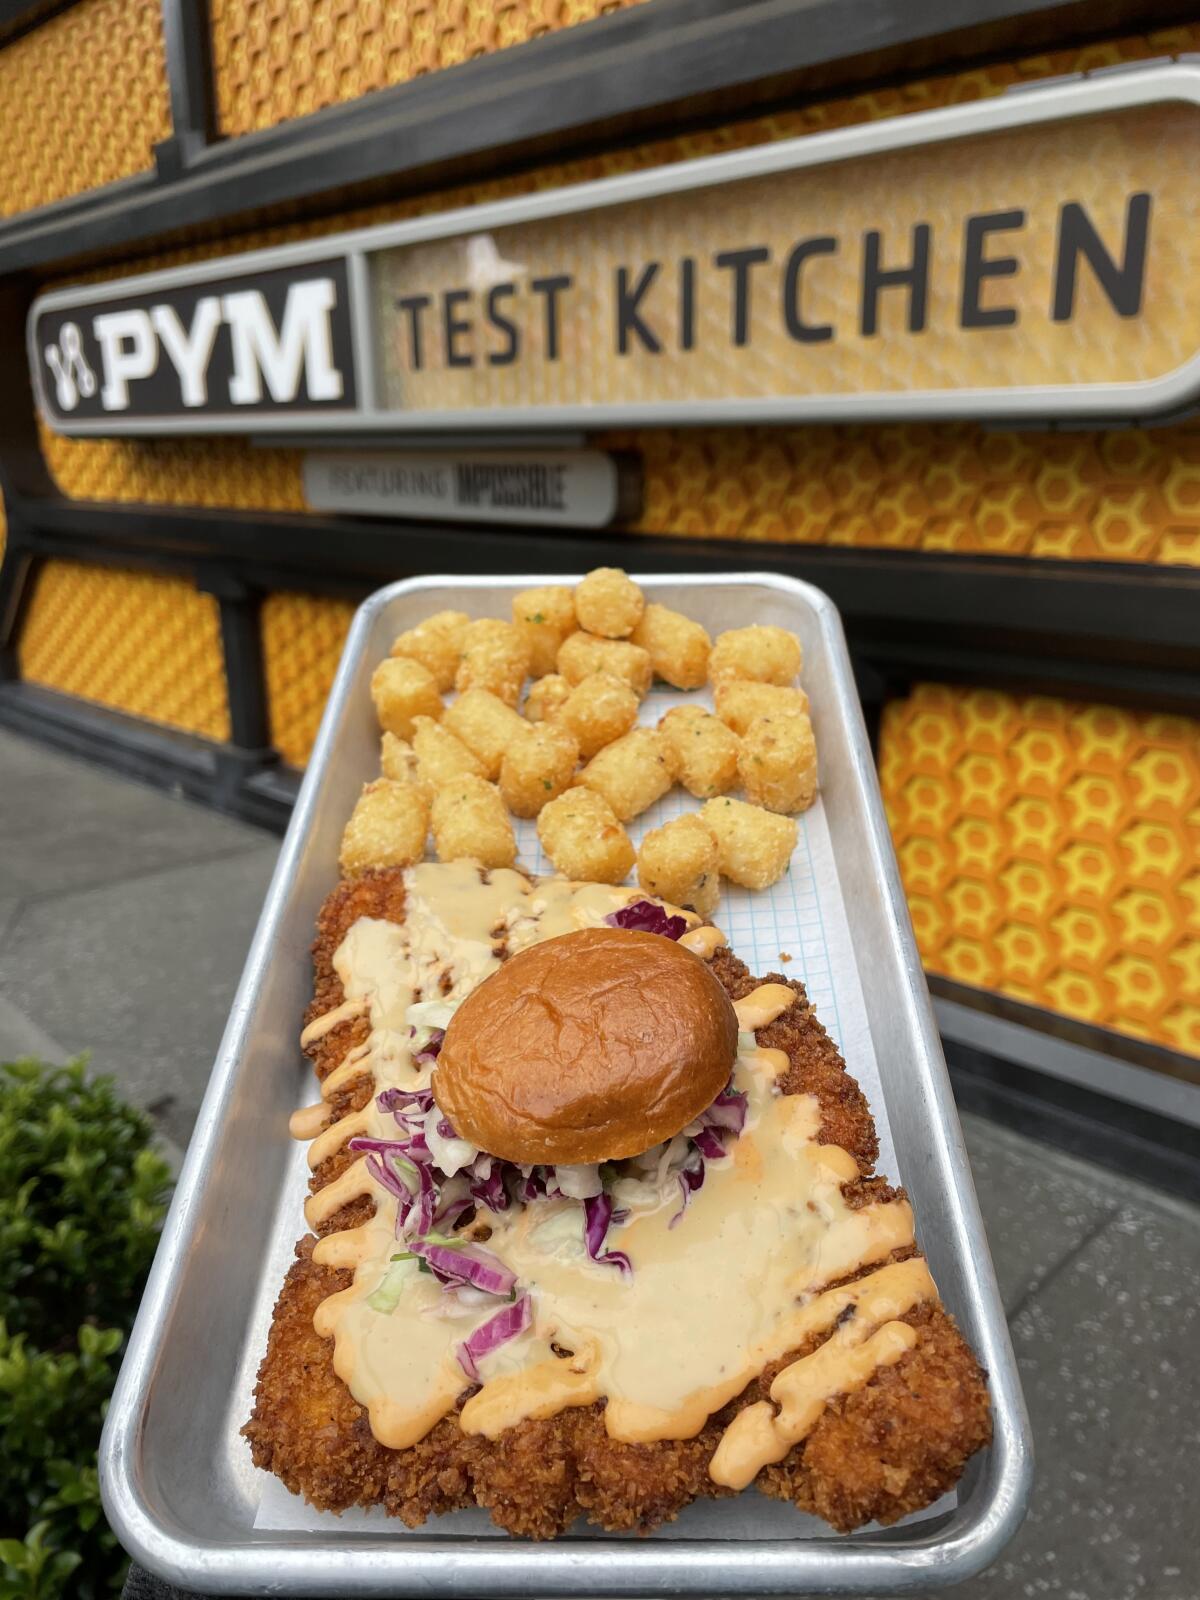 The "Not so Little Chicken Sandwich" at Pym Test Kitchen.